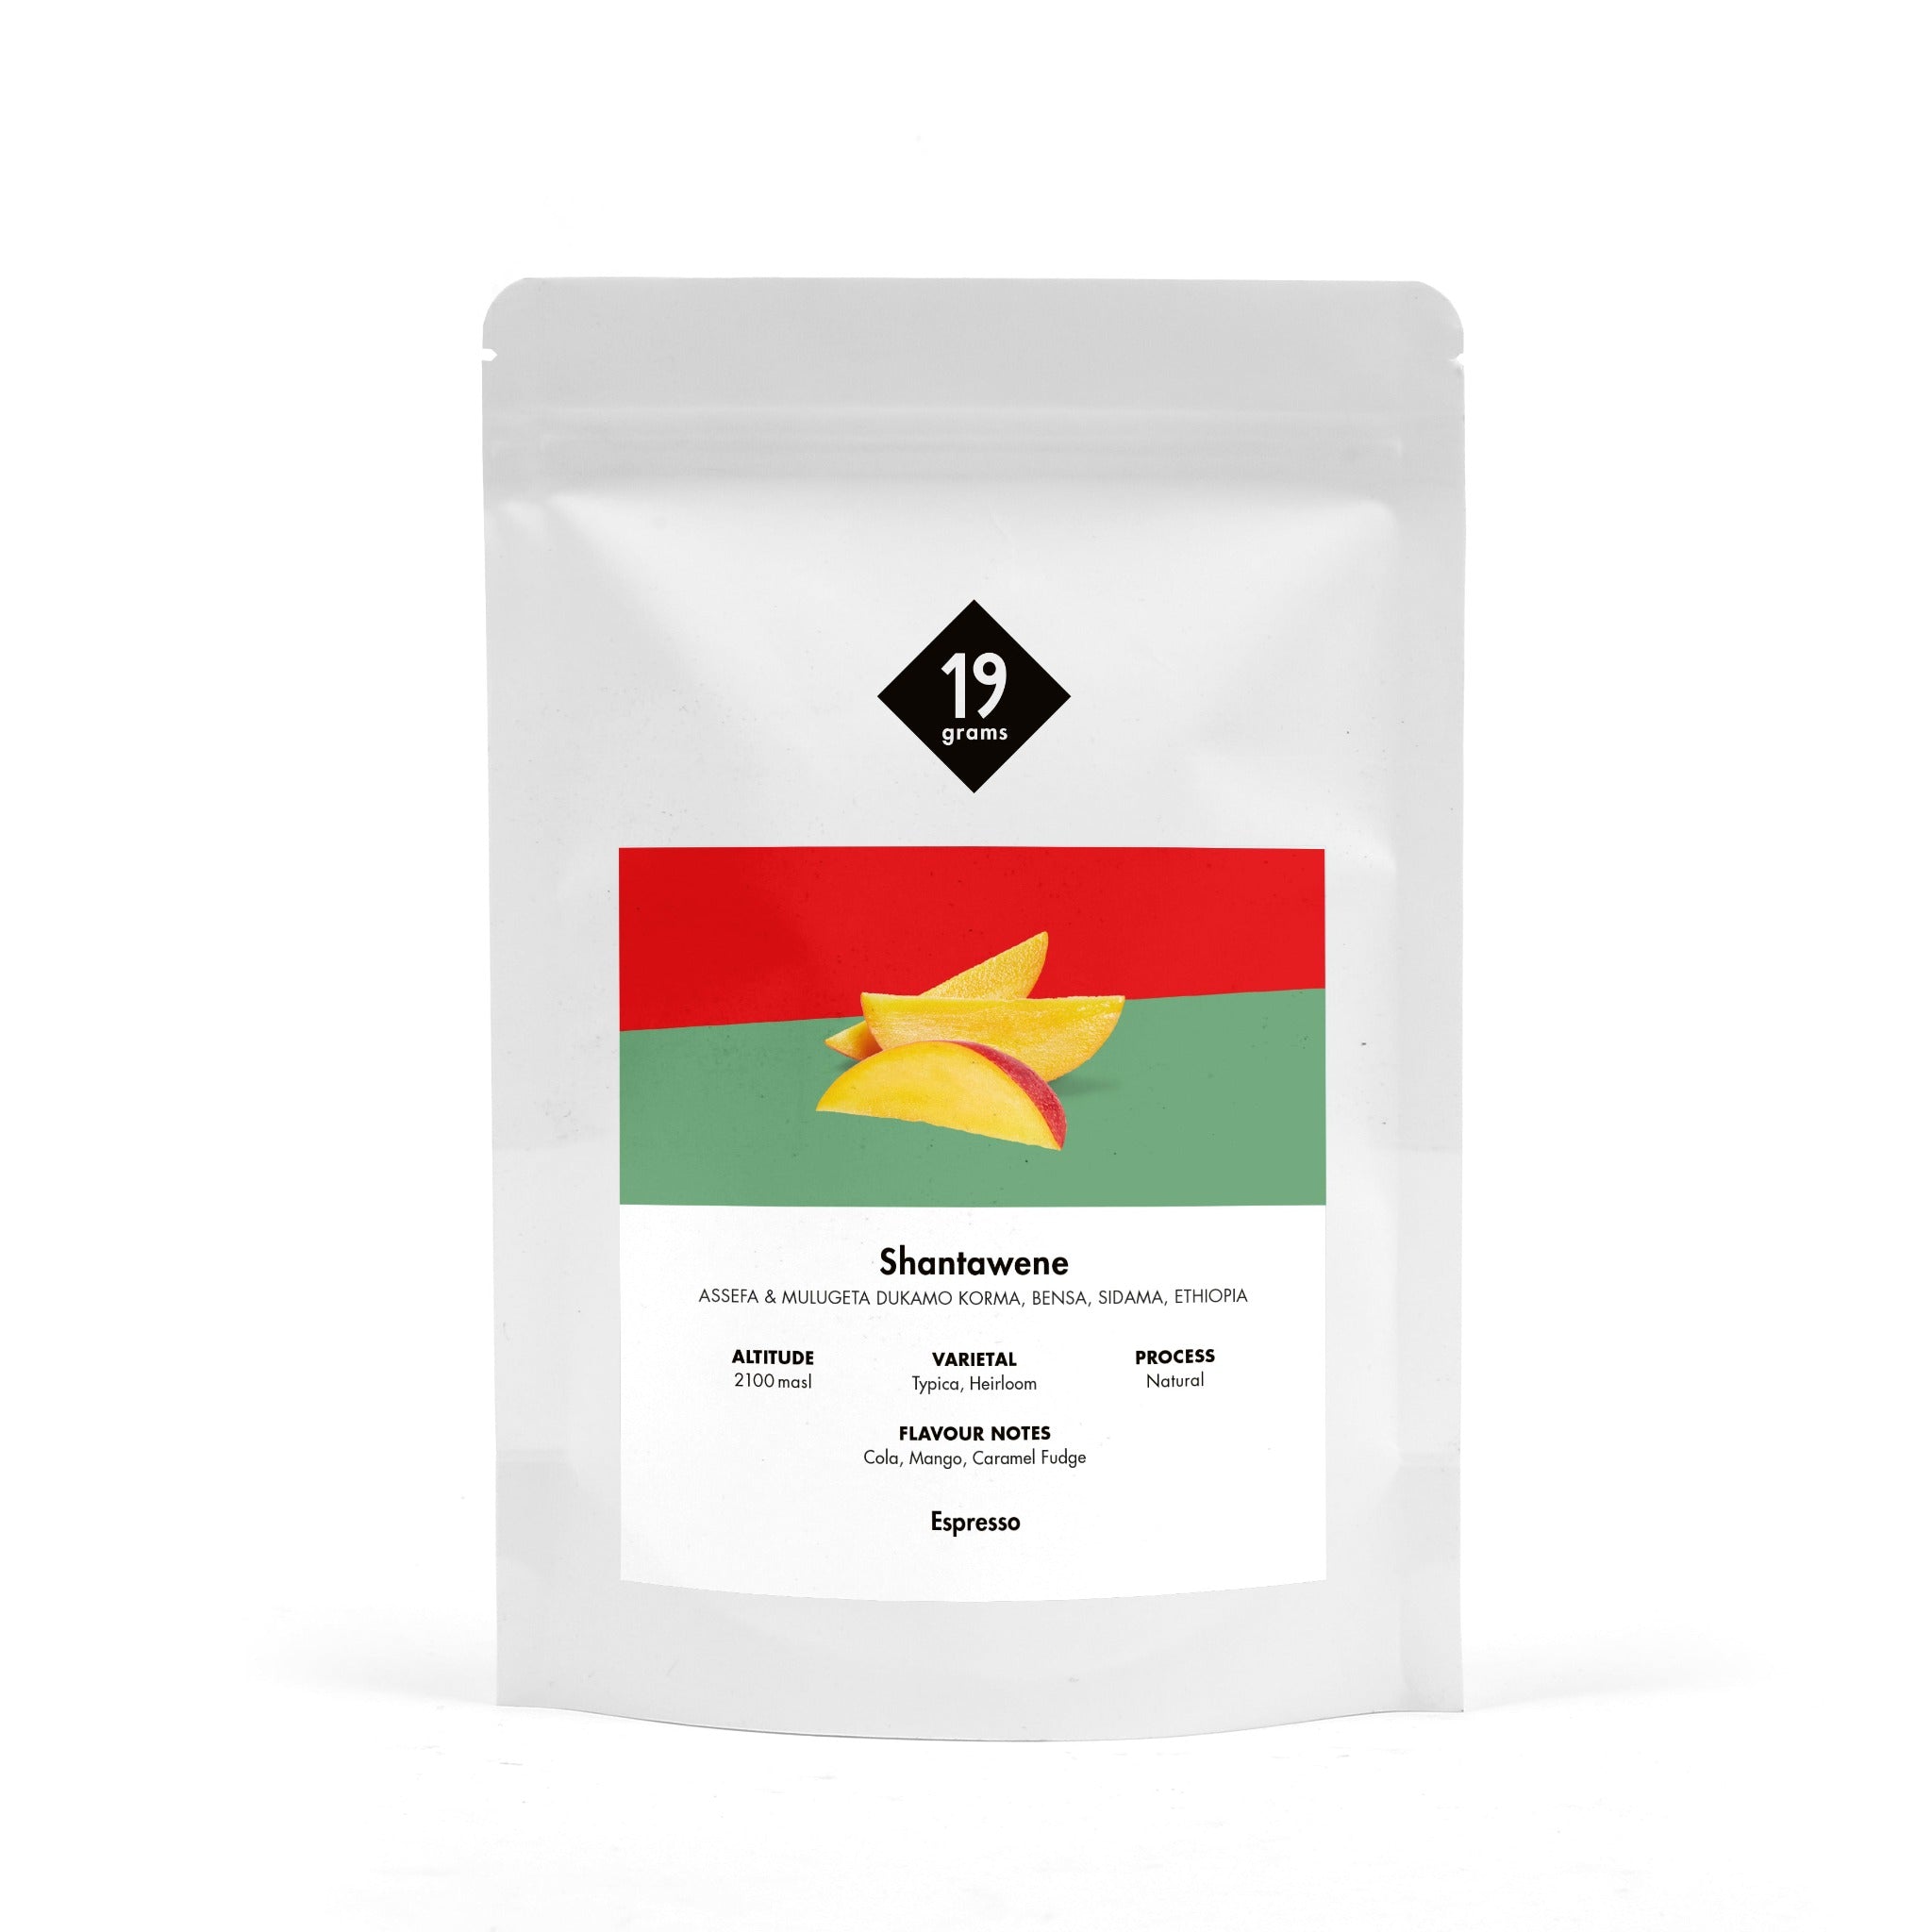 Deine 250g 19grams Products Shantawene Natural - Äthiopien Espresso Tüte